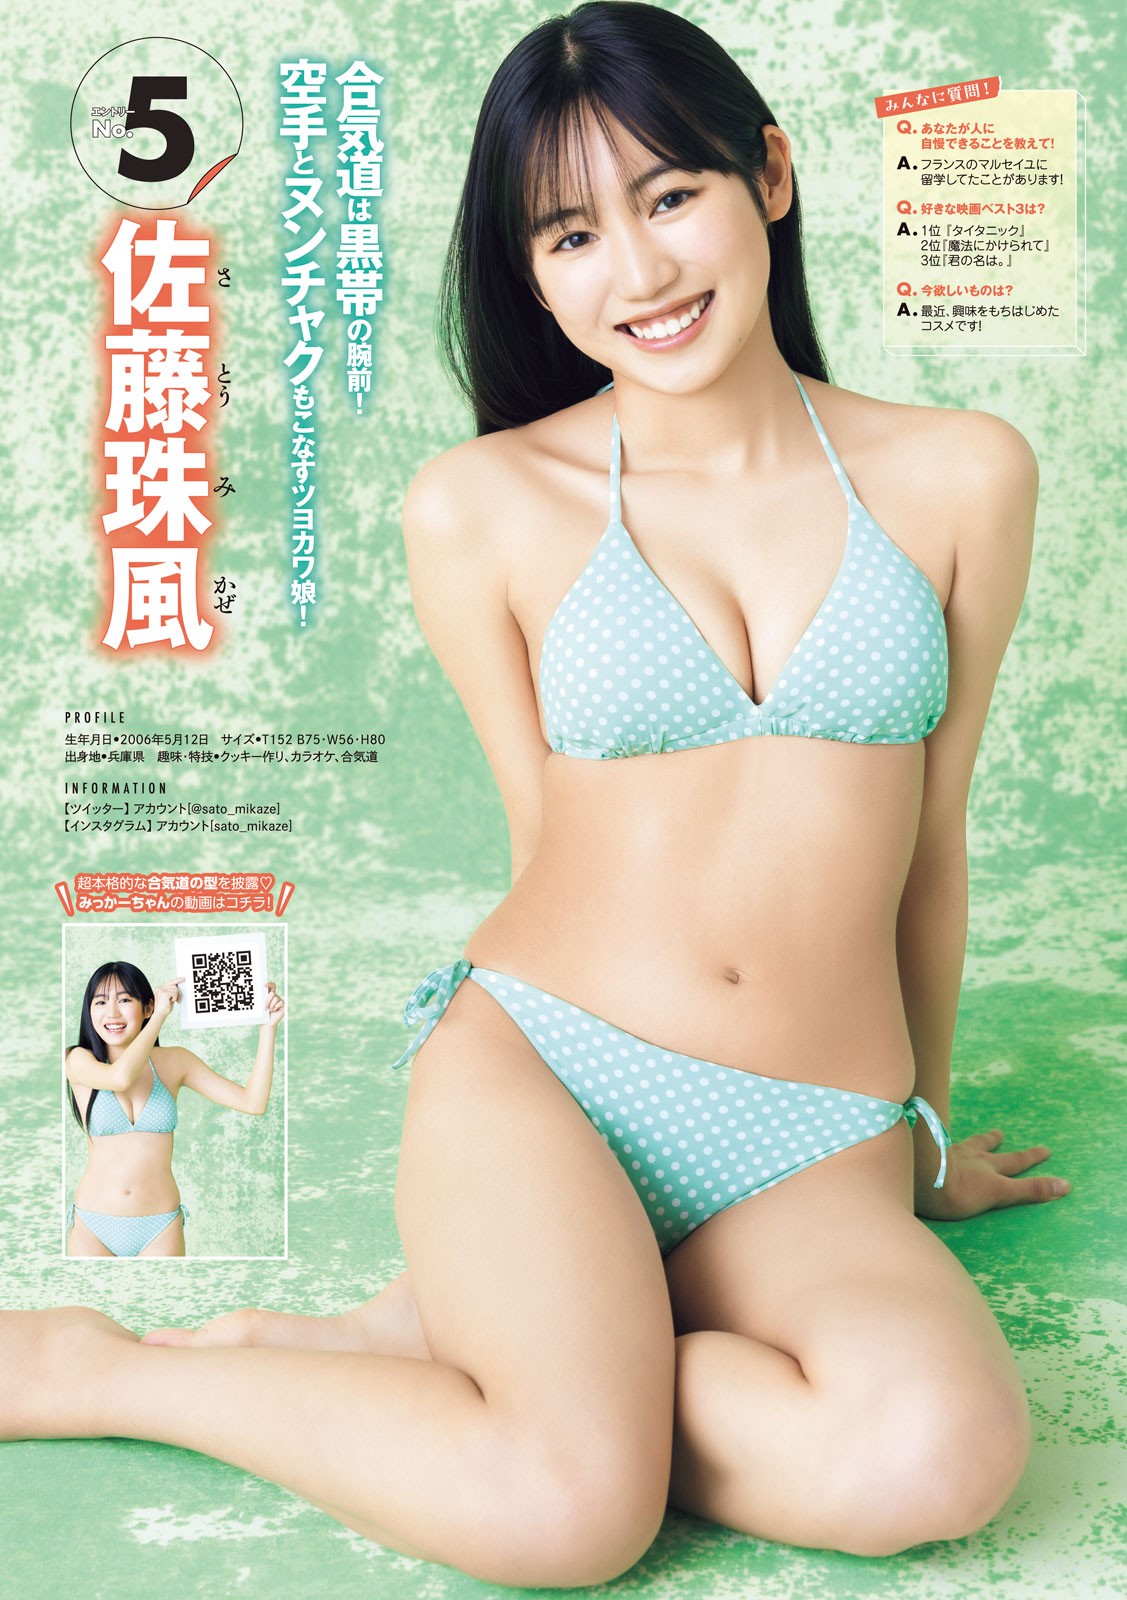 ミスマガジン2023 BEST16, Young Magazine 2023 No.24 (ヤングマガジン 2023年24号)